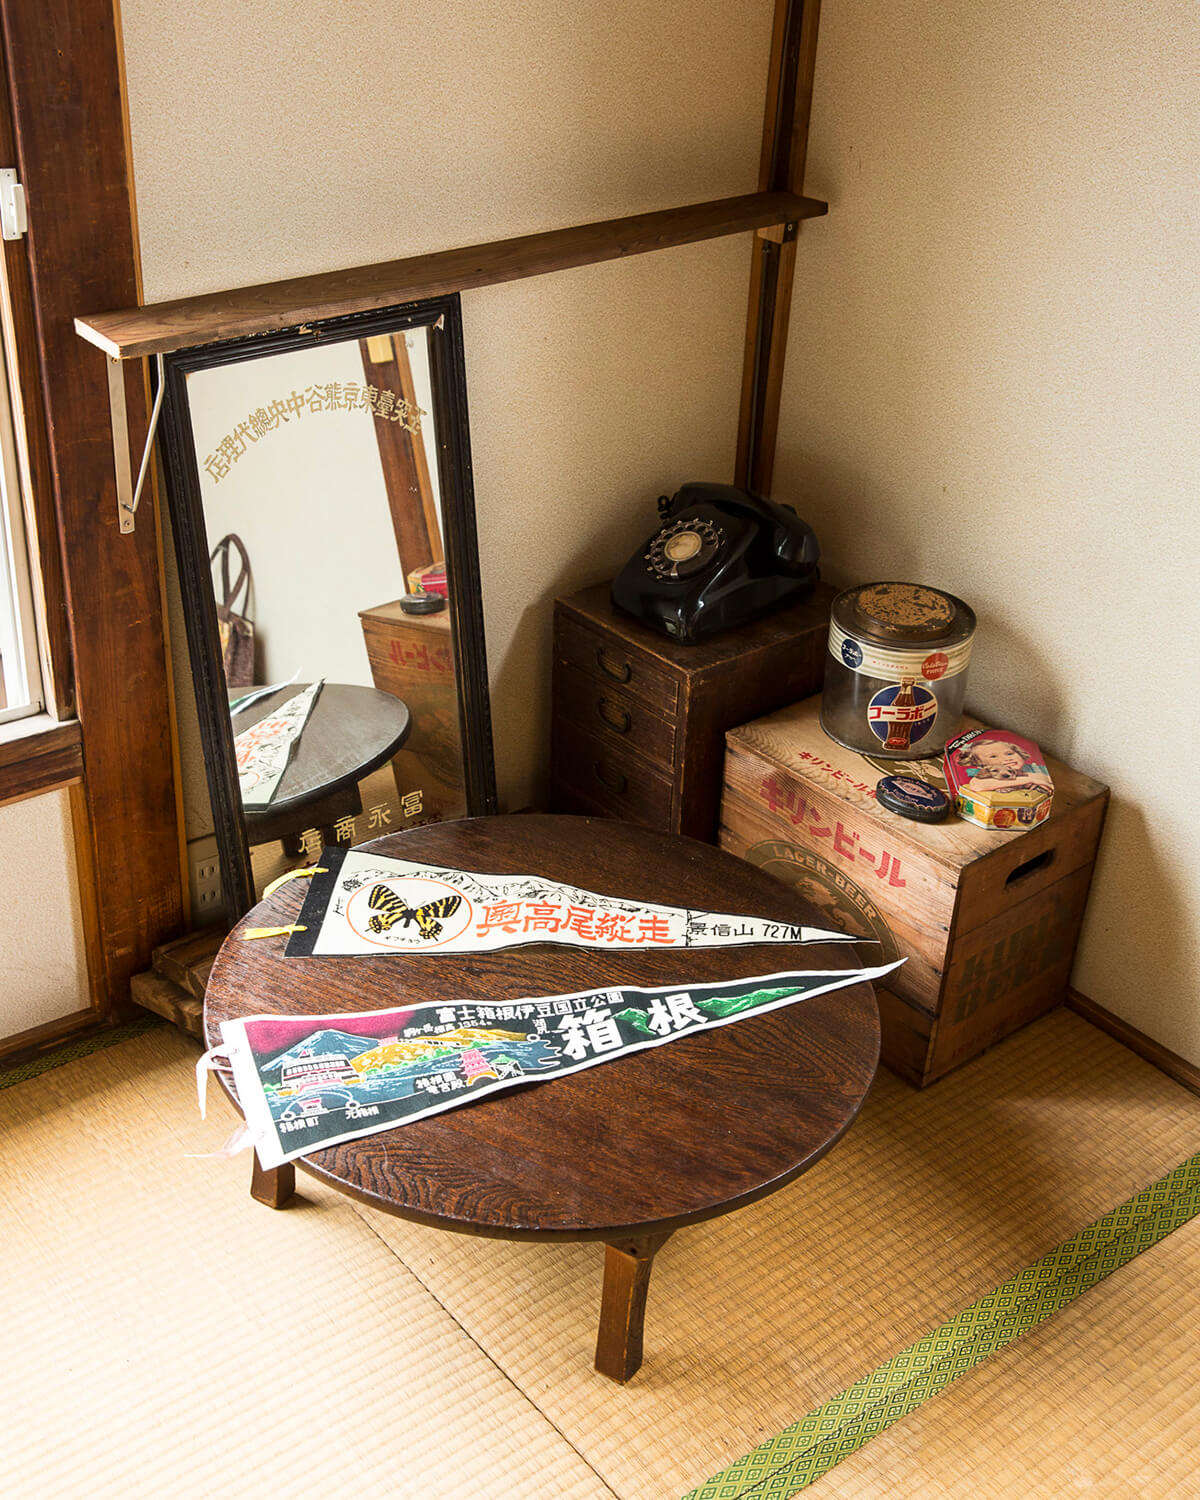 高円寺で 純情 昭和レトロ生活 のすすめ 雑貨 古道具 定食屋さんに純喫茶 さんたつ By 散歩の達人